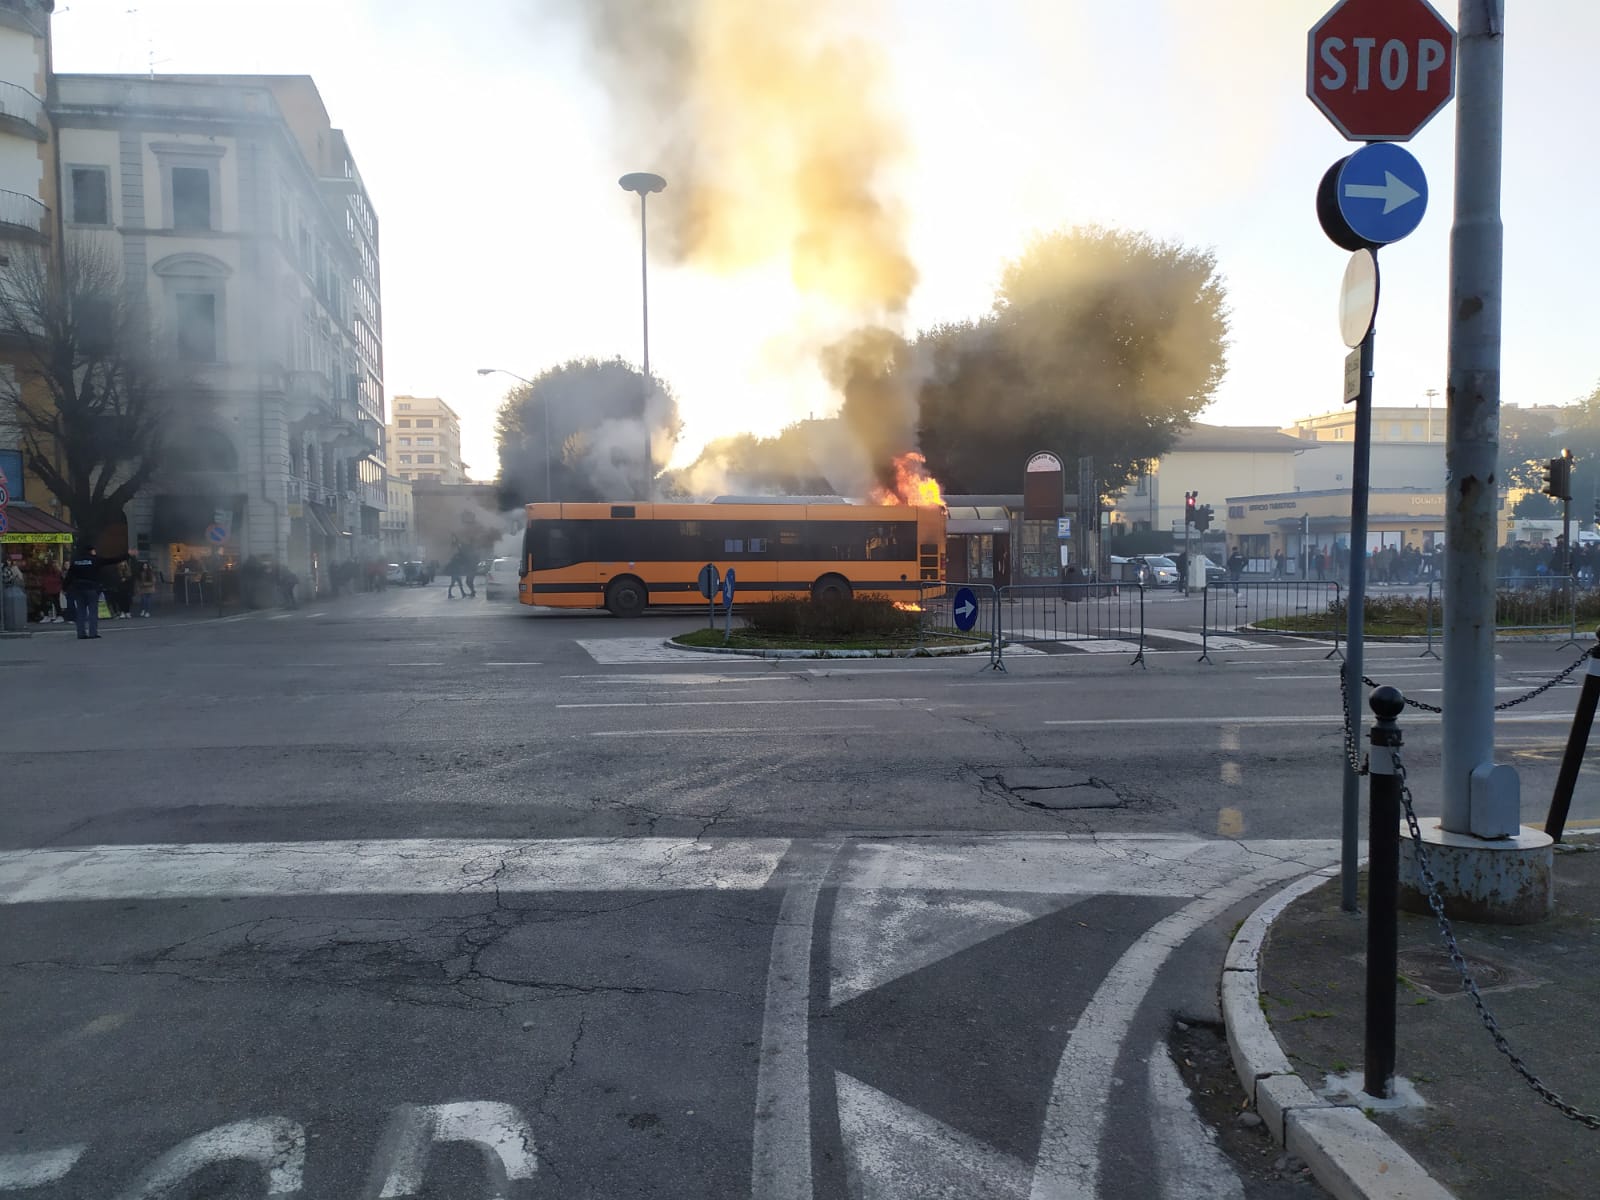 Bus in fiamme, scontro politico aperto sulla sicurezza. Un corto circuito la causa del rogo, verifiche in corso